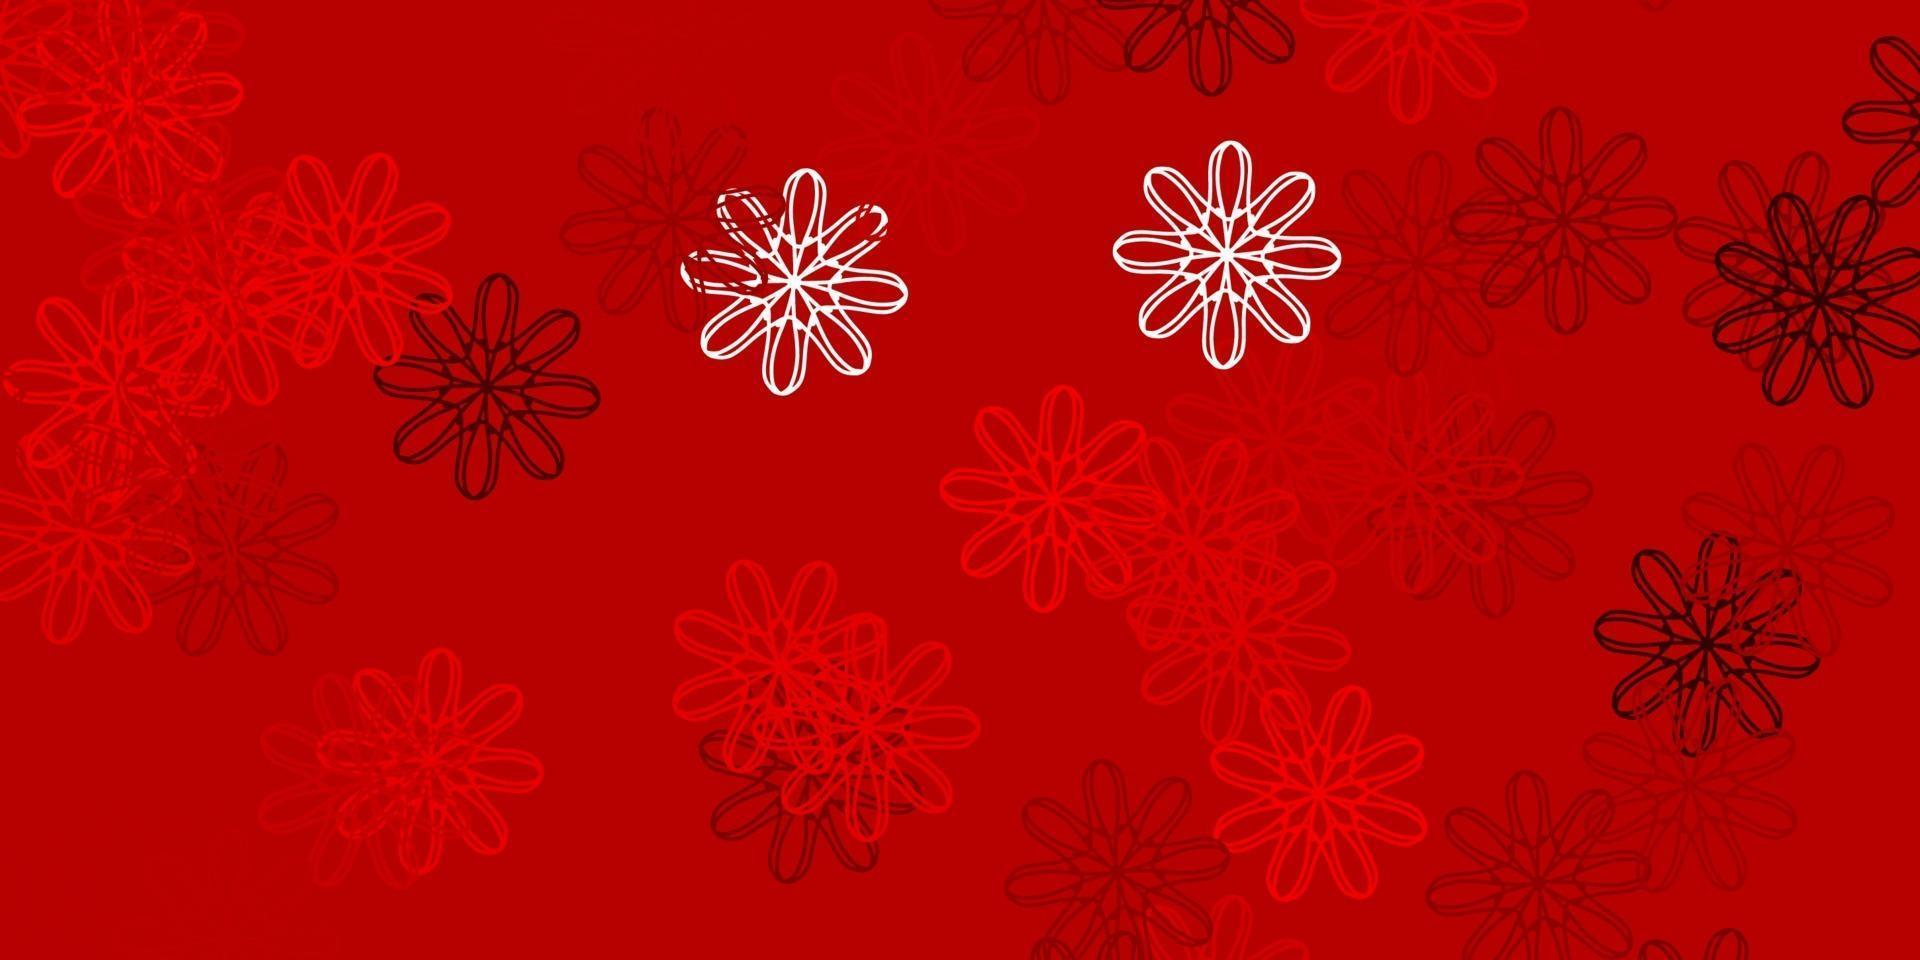 trama di doodle vettoriale rosso chiaro con fiori.